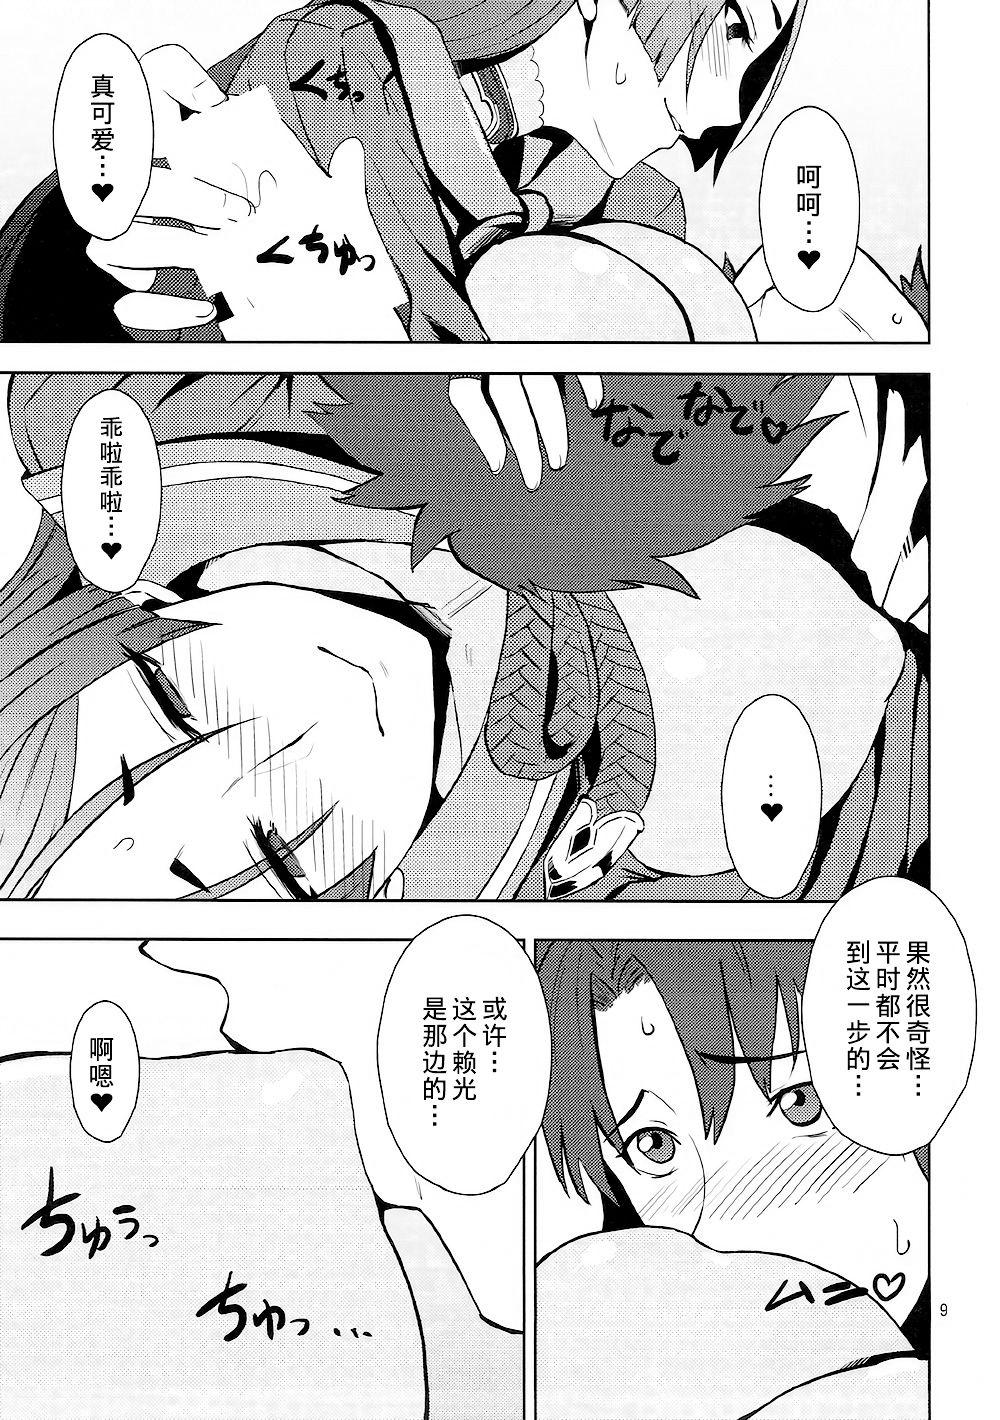 Arrecha Onigiri Blossom - Fate grand order  - Page 10